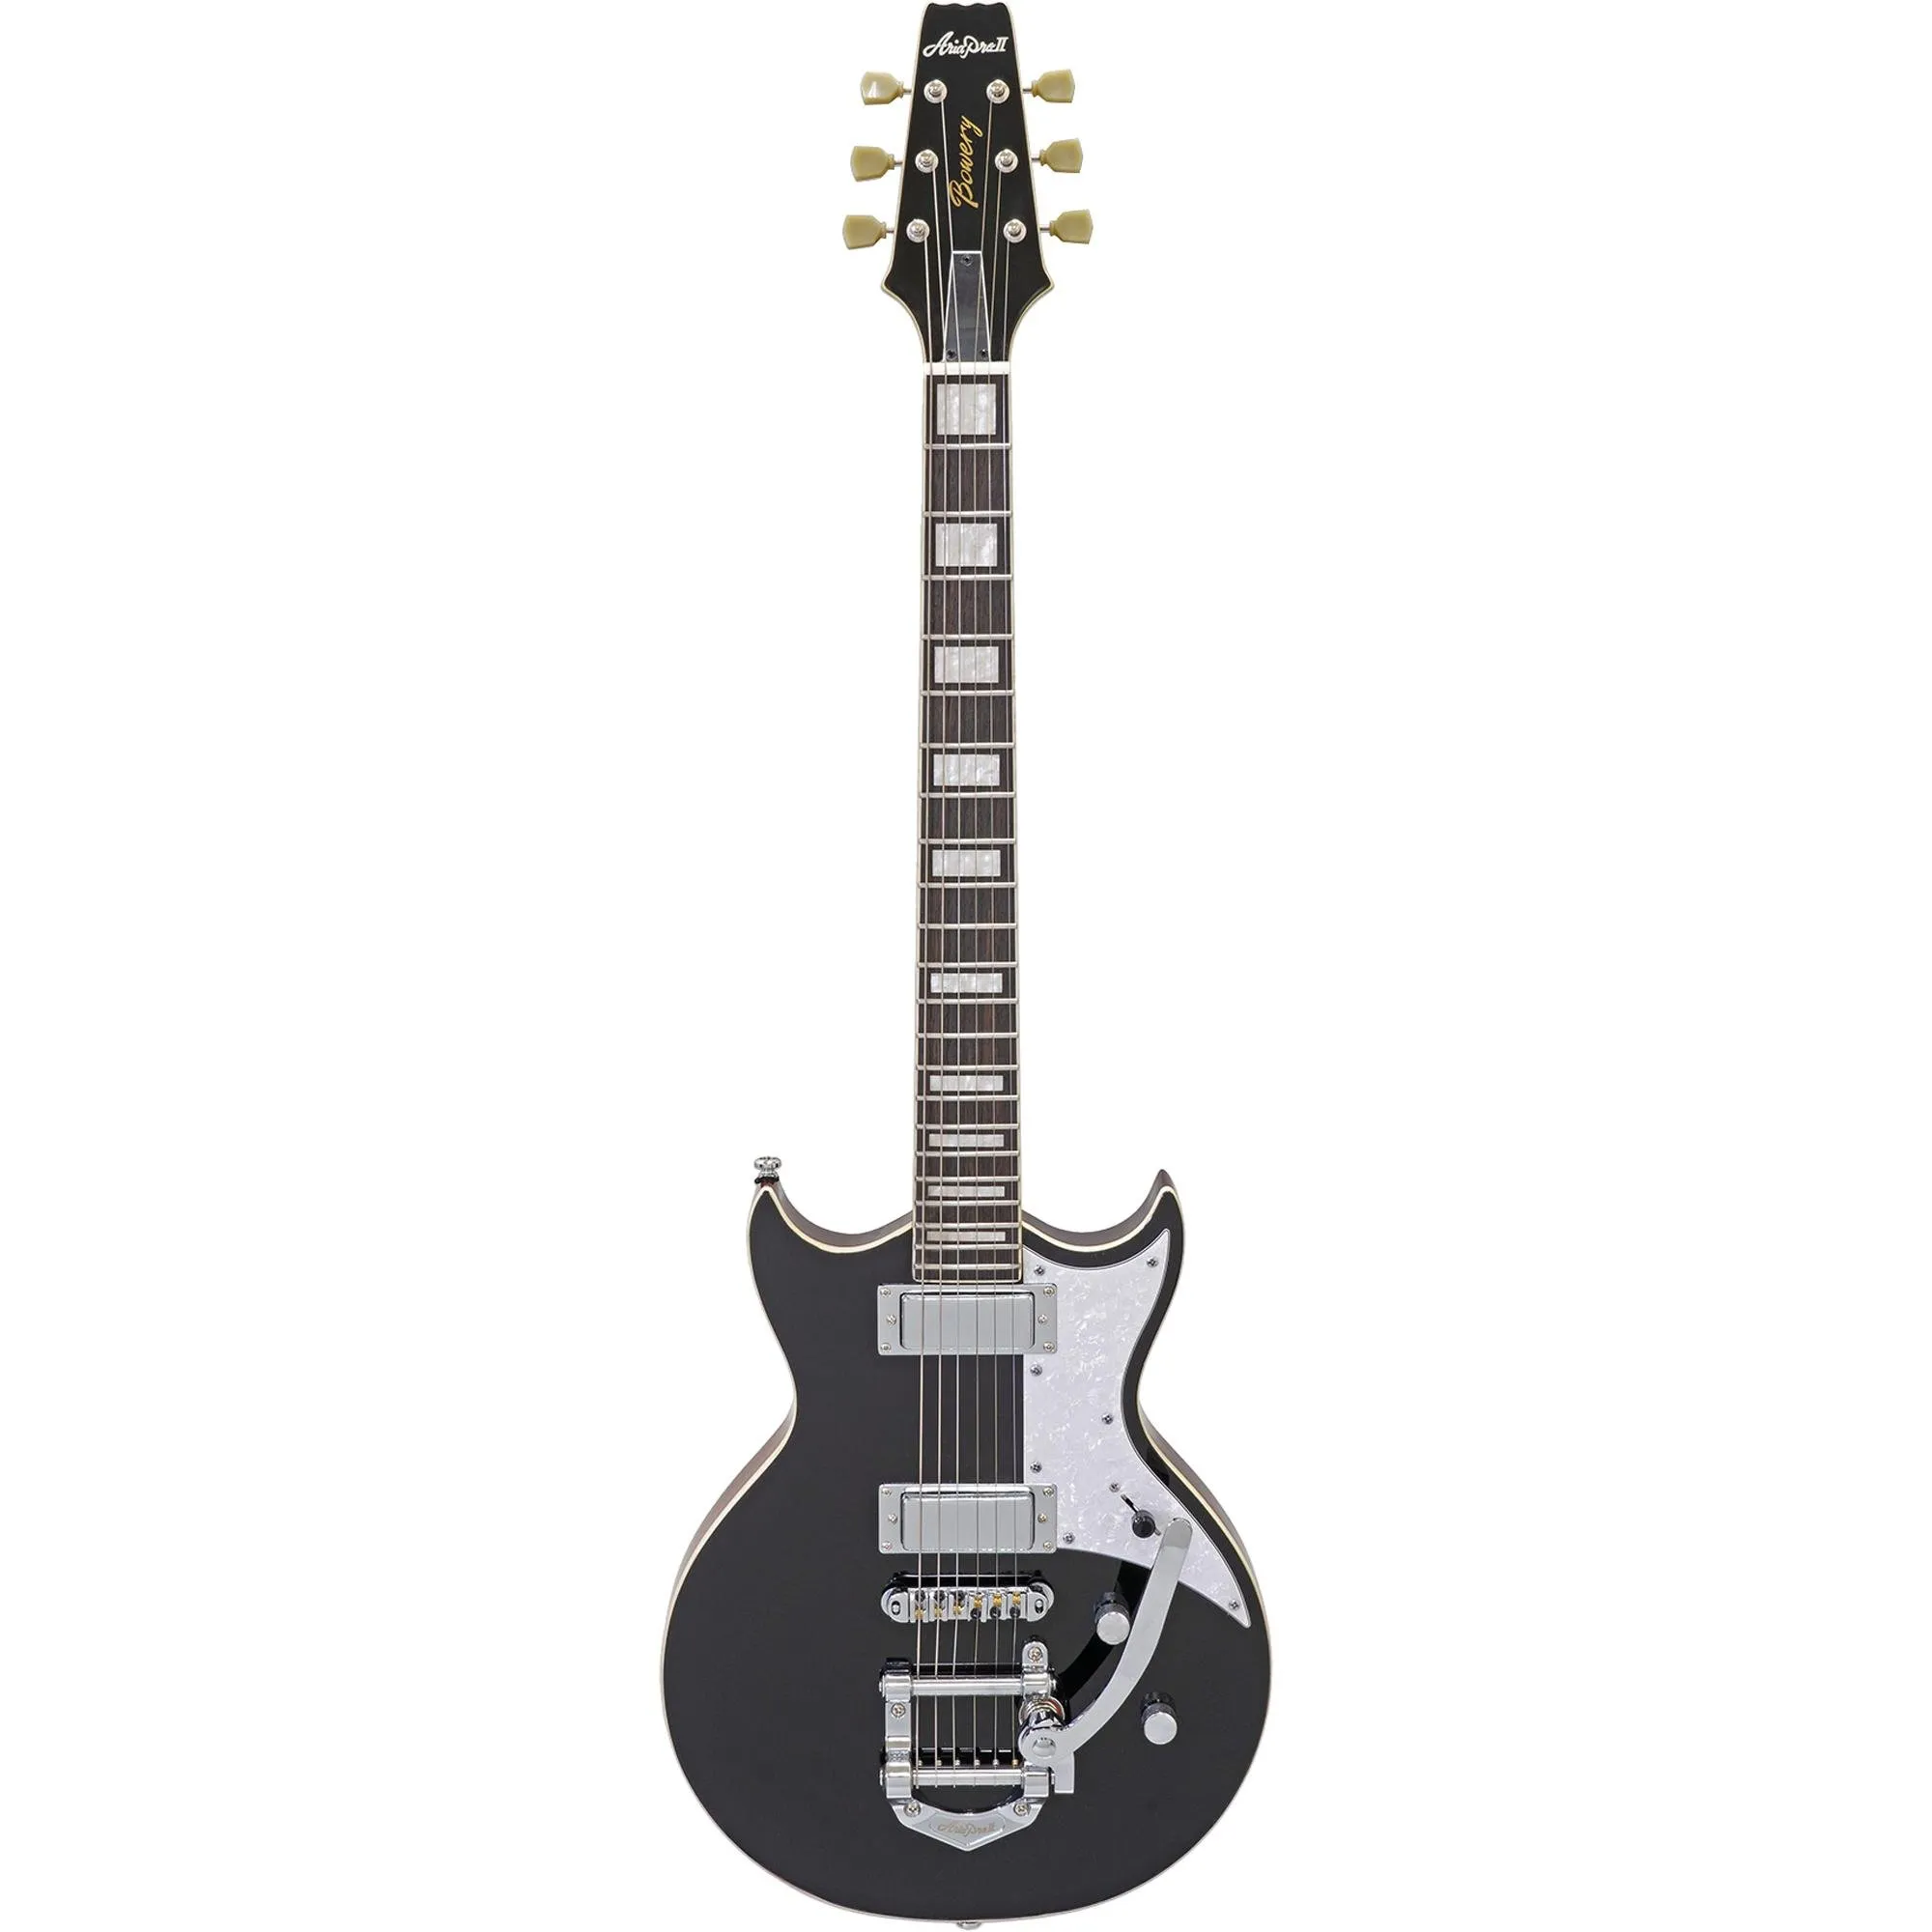 Guitarra Aria Pro II 212-MK2 Bowery Black por 5.054,00 à vista no boleto/pix ou parcele em até 12x sem juros. Compre na loja Mundomax!